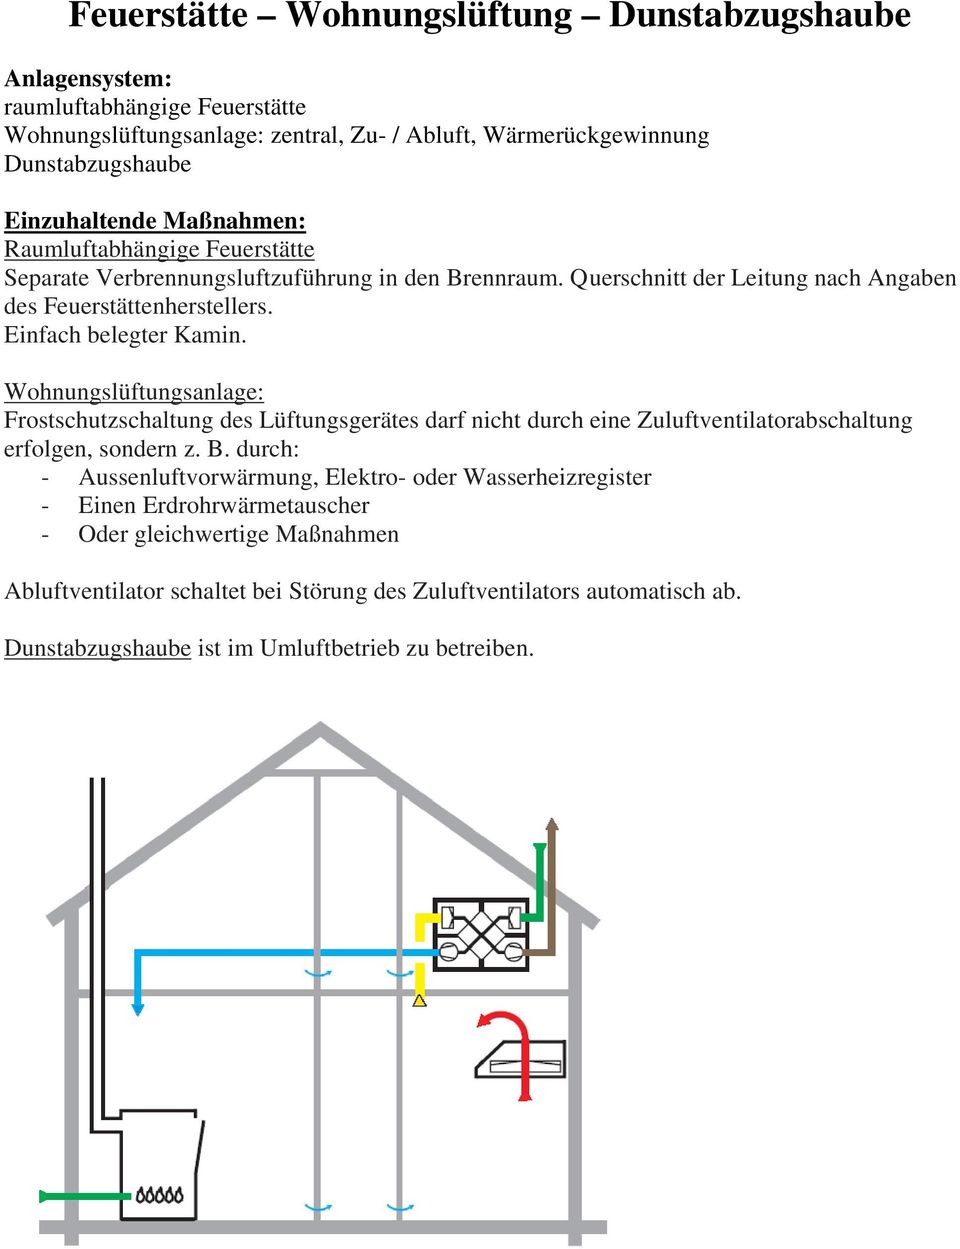 Wohnungslüftungsanlage: Frostschutzschaltung des Lüftungsgerätes darf nicht durch eine Zuluftventilatorabschaltung erfolgen, sondern z. B.